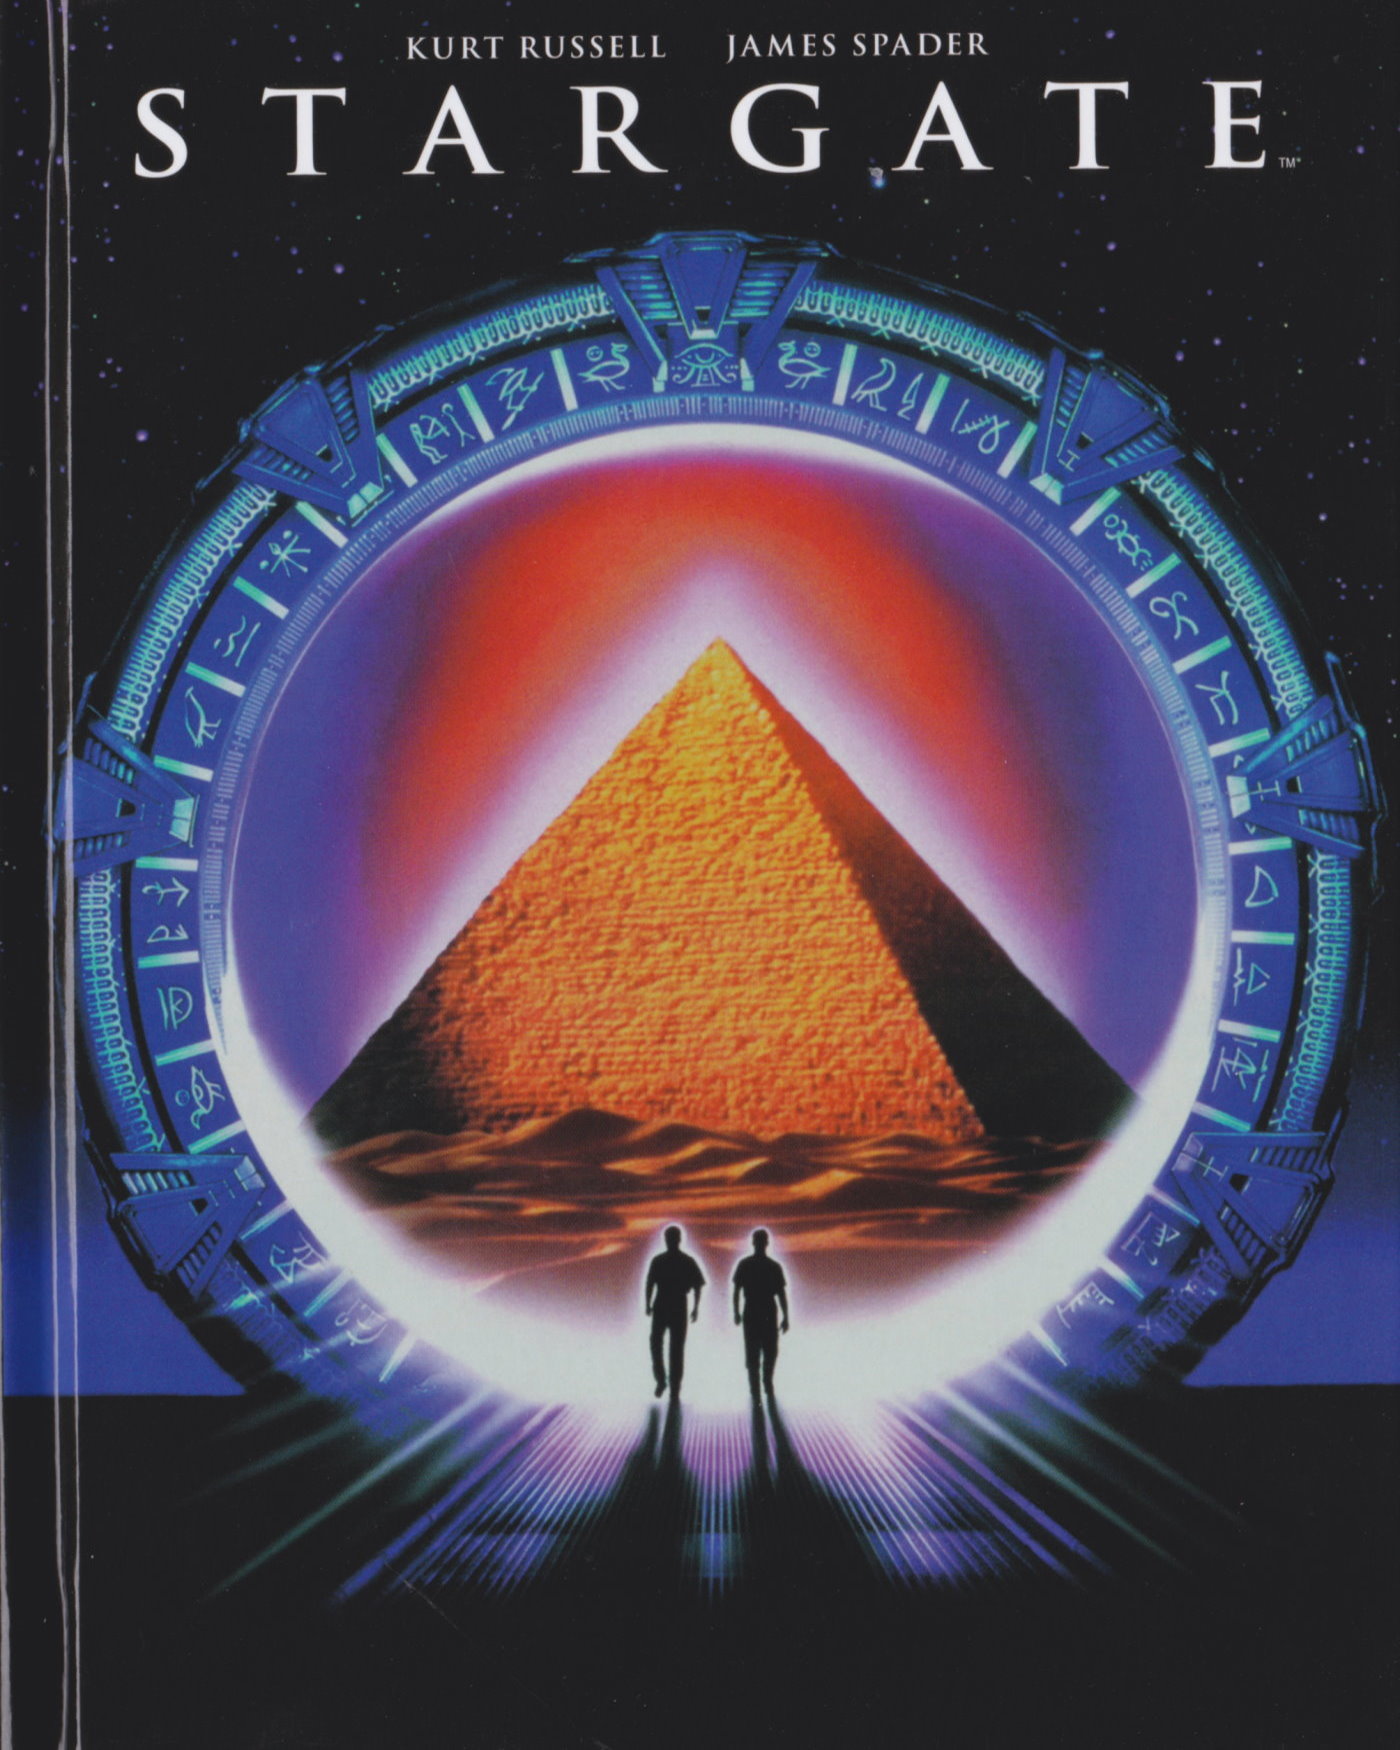 Cover - Stargate.jpg